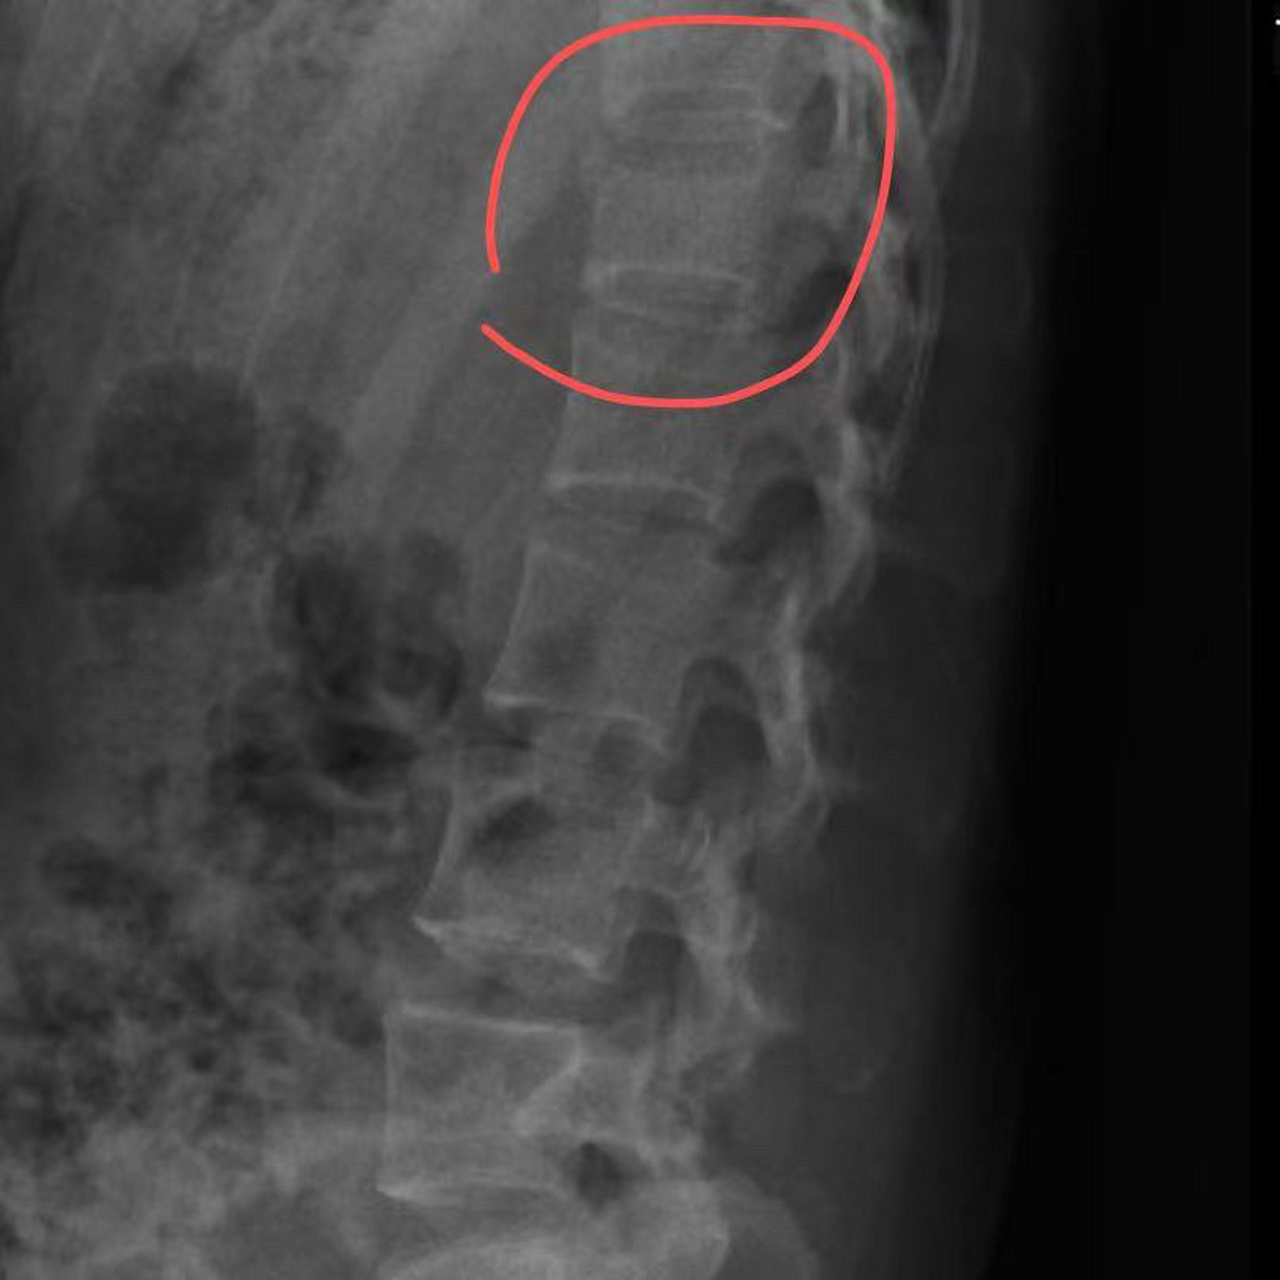 腰椎l1椎体压缩性骨折/绝卧第4天记录 一开始去医院看急诊的时候完全